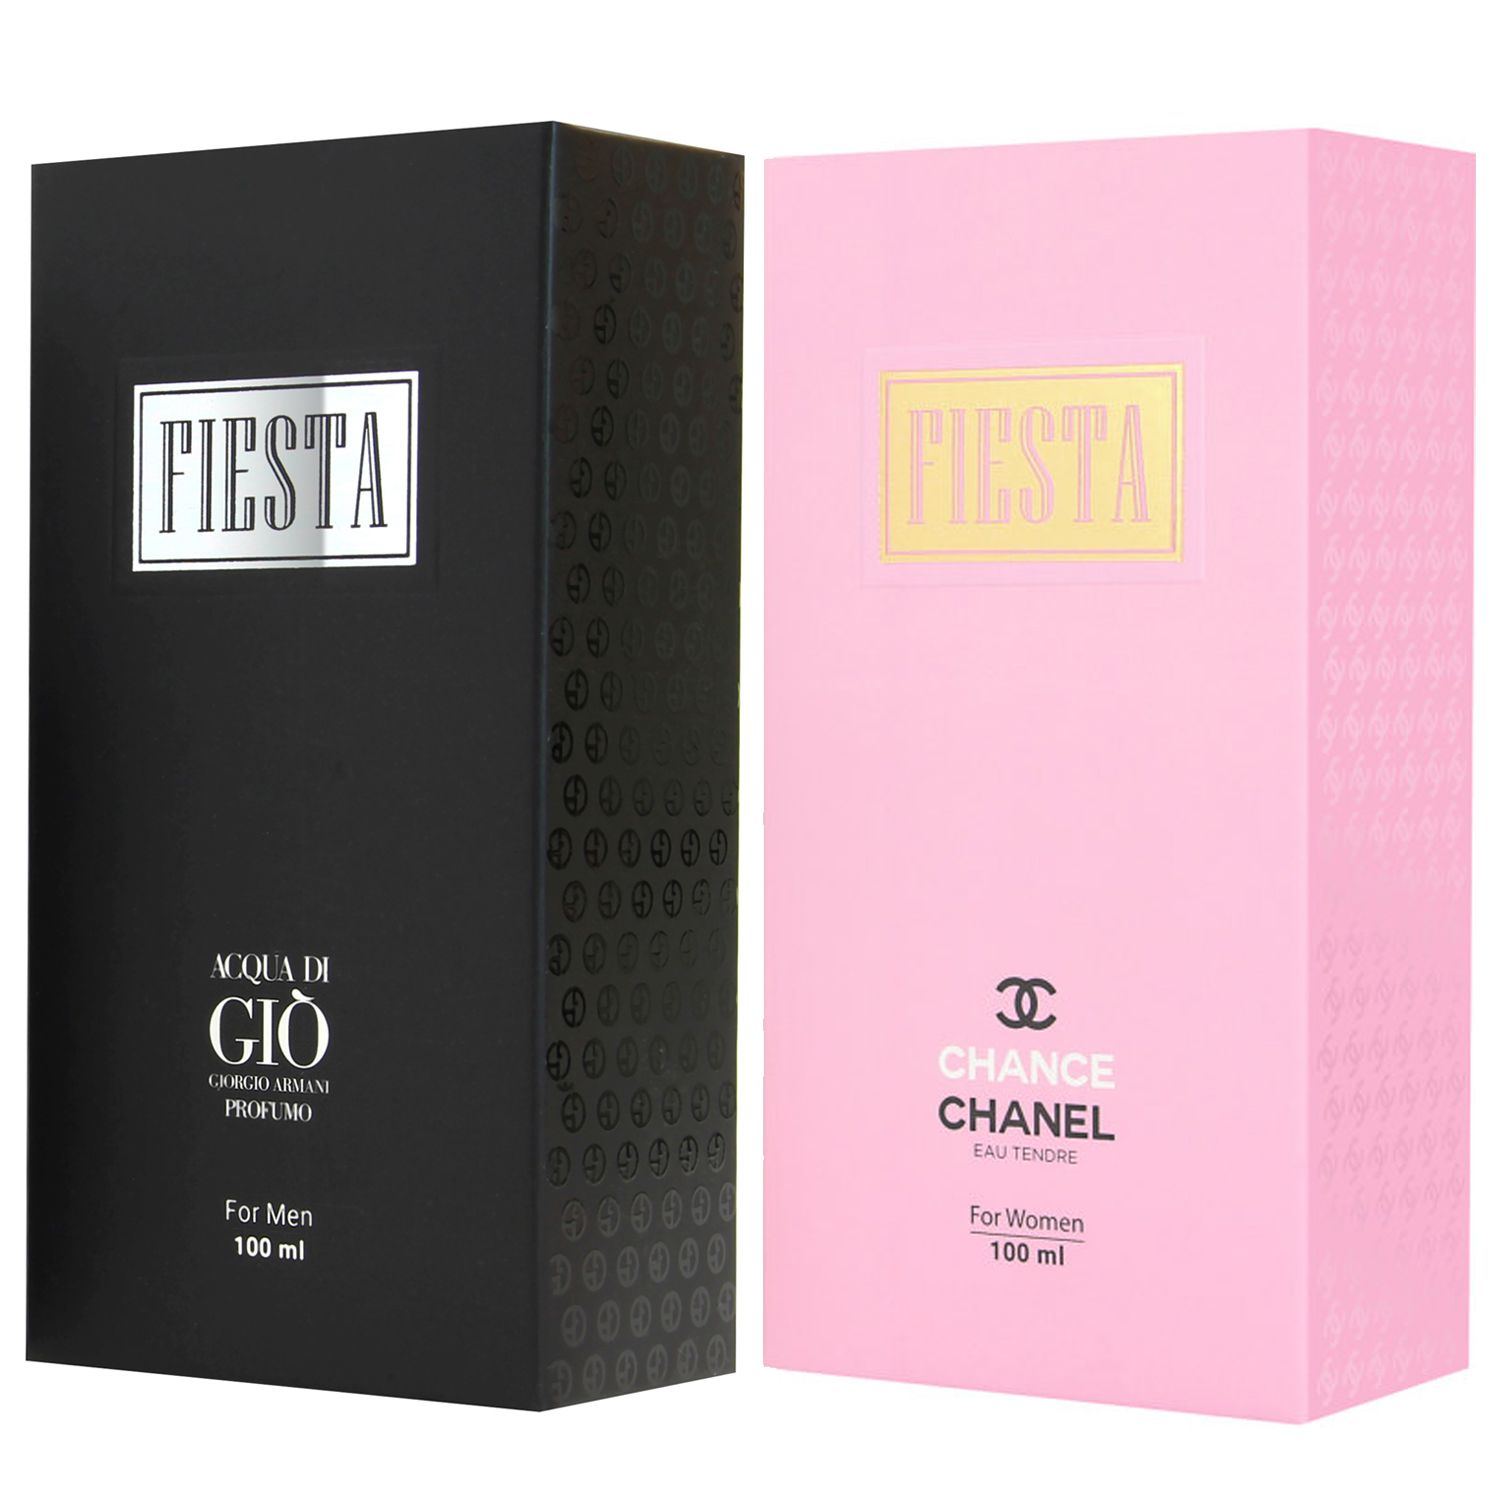 ادو پرفیوم زنانه فیستا مدل Chanel Chance Tendre حجم 100 میلی لیتر به همراه ادو پرفیوم مردانه فیستا مدل Acqua di Gio Profumo -  - 2